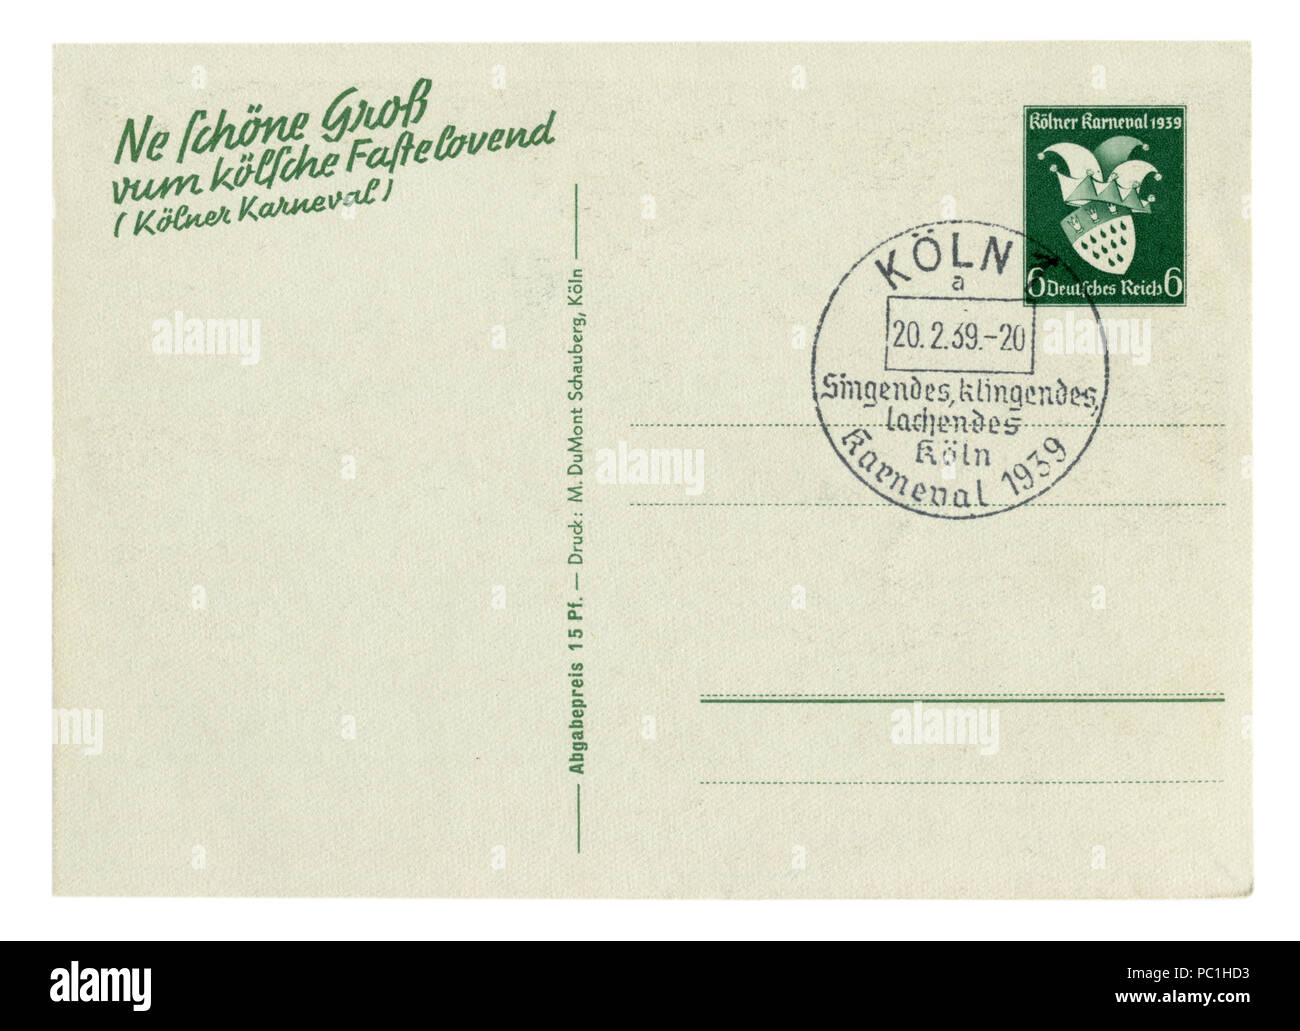 Zurück der historischen deutschen Postkarte (PC1 H9 C): Karneval in Köln, Sonderstempel 20.2.39, stationäre Briefmarke, Deutschland, Drittes Reich Stockfoto